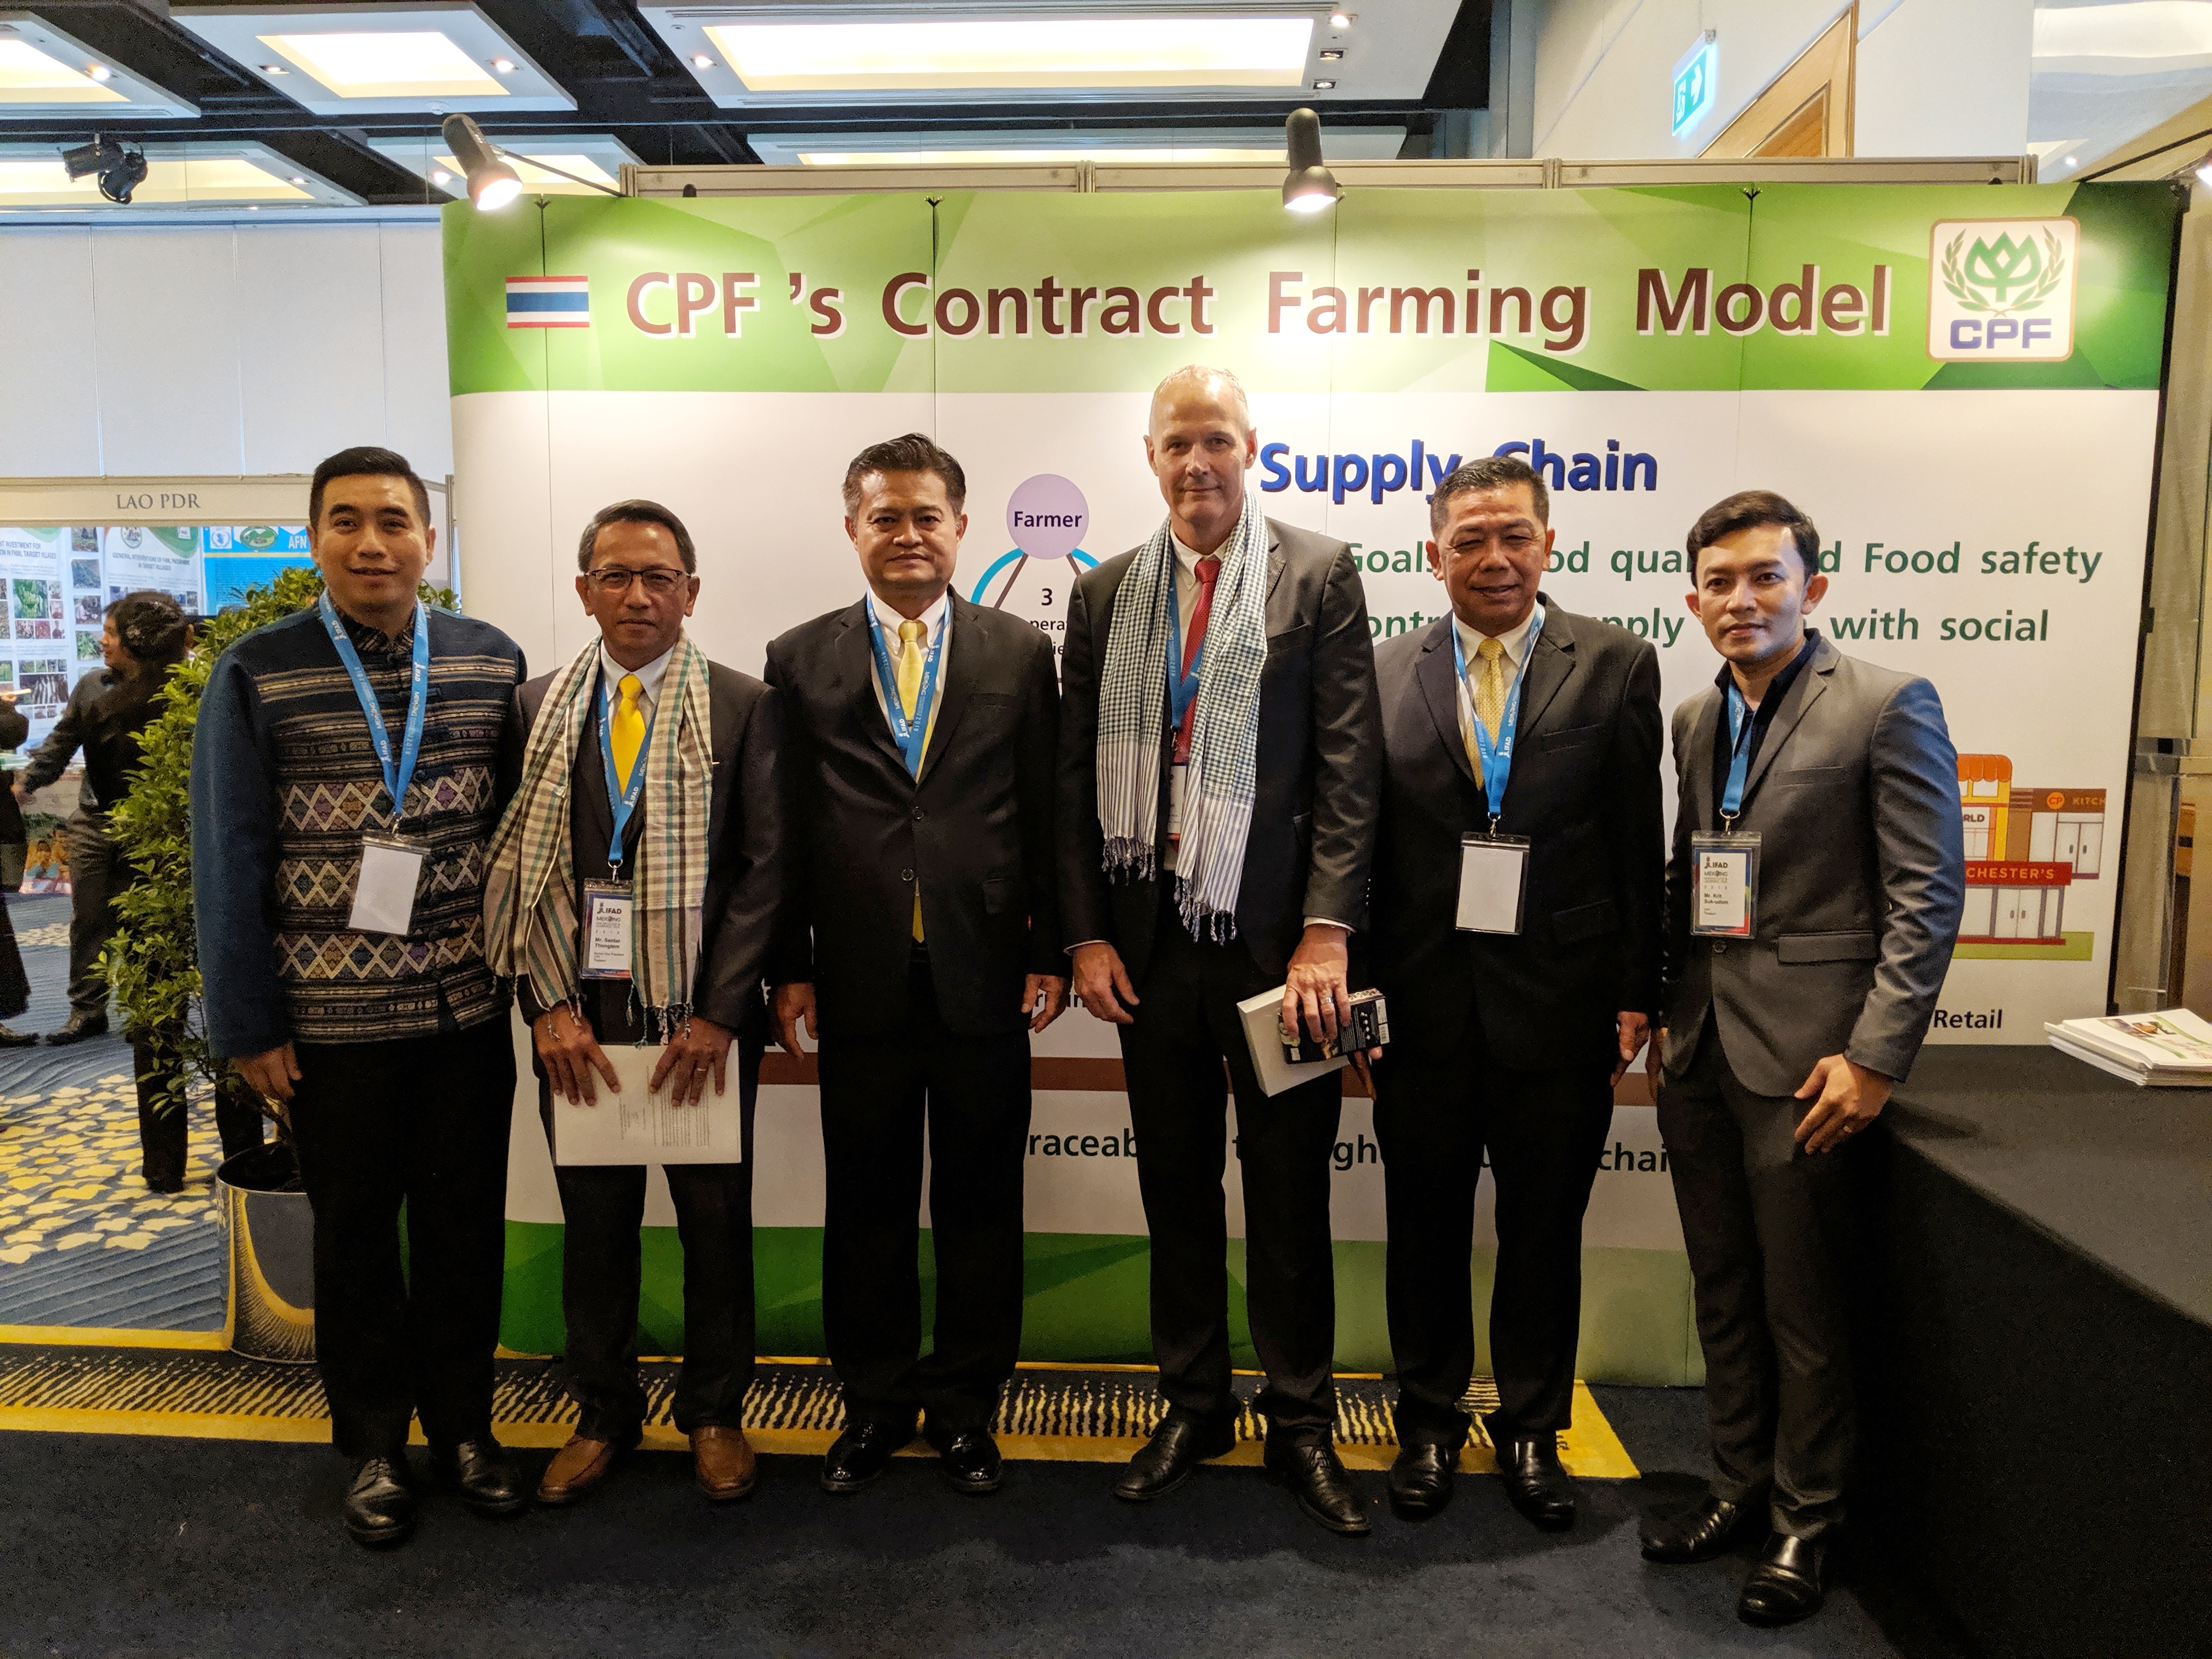 ประเทศกลุ่มแม่น้ำโขง เรียนรู้ Contract Farming โมเดลความสำเร็จพัฒนาภาคเกษตรไทย